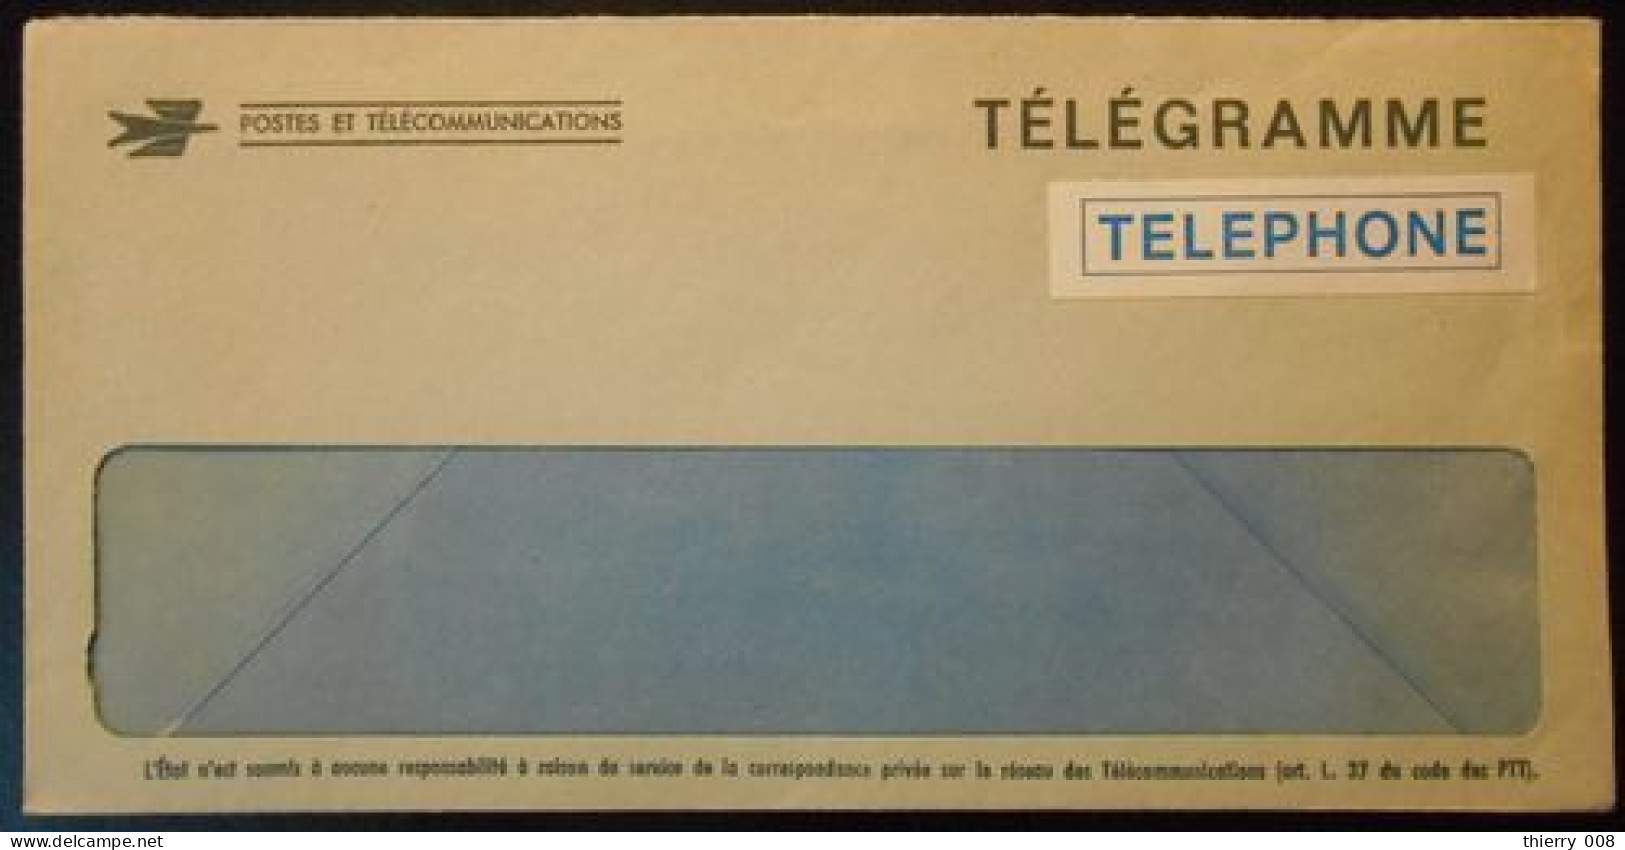 7a16 Enveloppe Télégramme Téléphone Logo Postes Et Télécommunications - Telegraphie Und Telefon